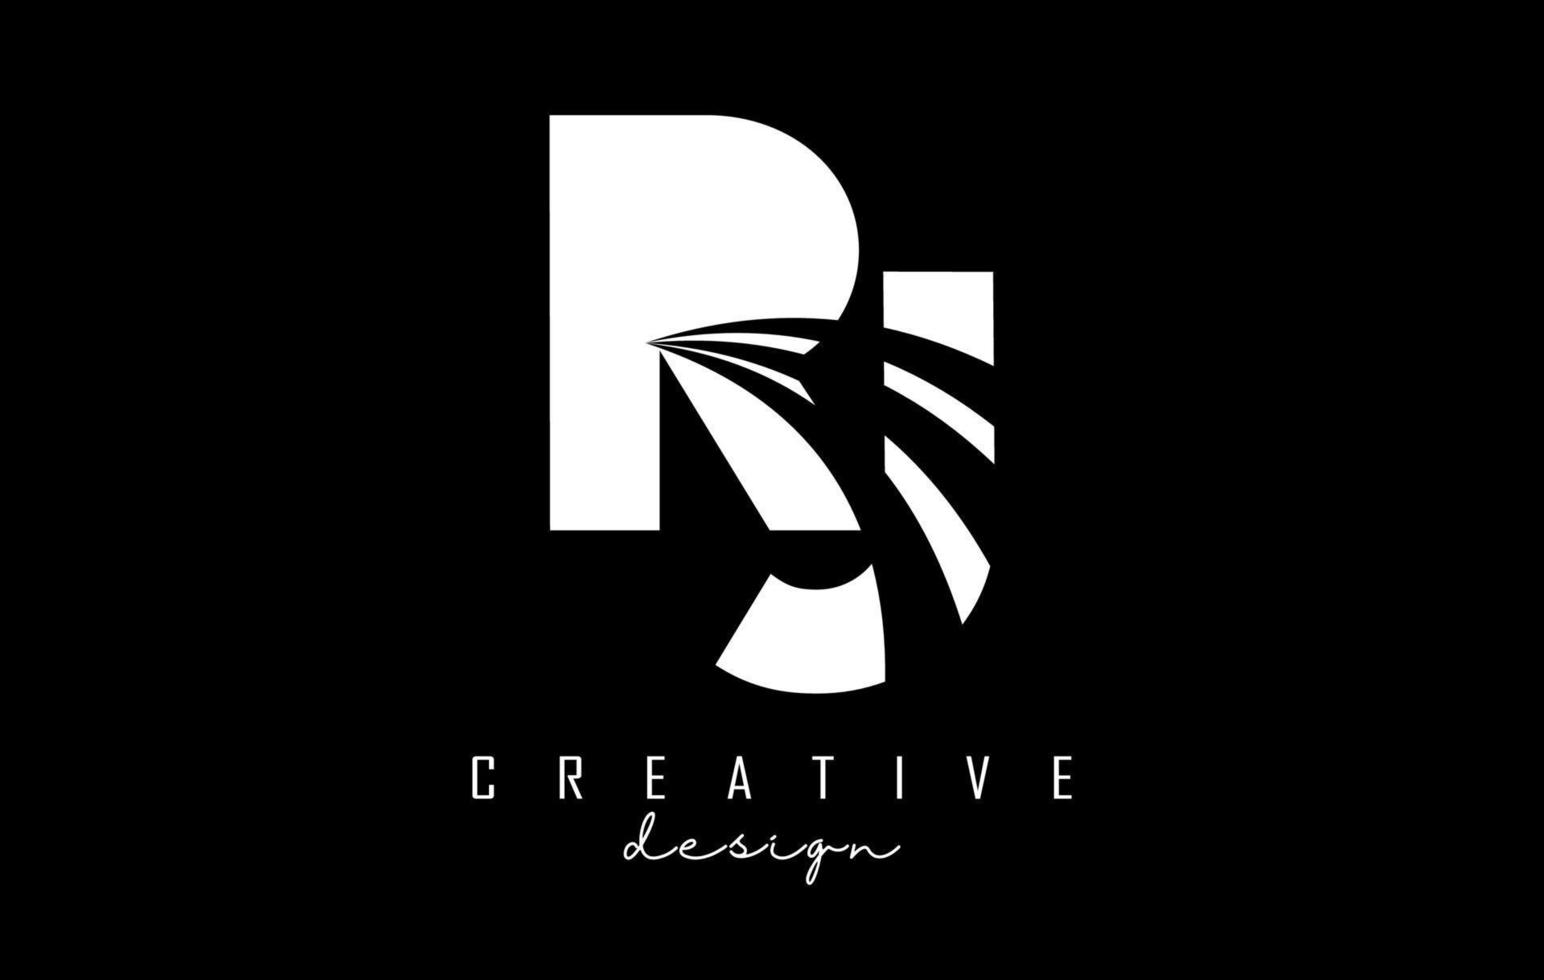 Logotipo creativo de letras blancas rj rj con líneas principales y diseño de concepto de carretera. letras con diseño geométrico. vector